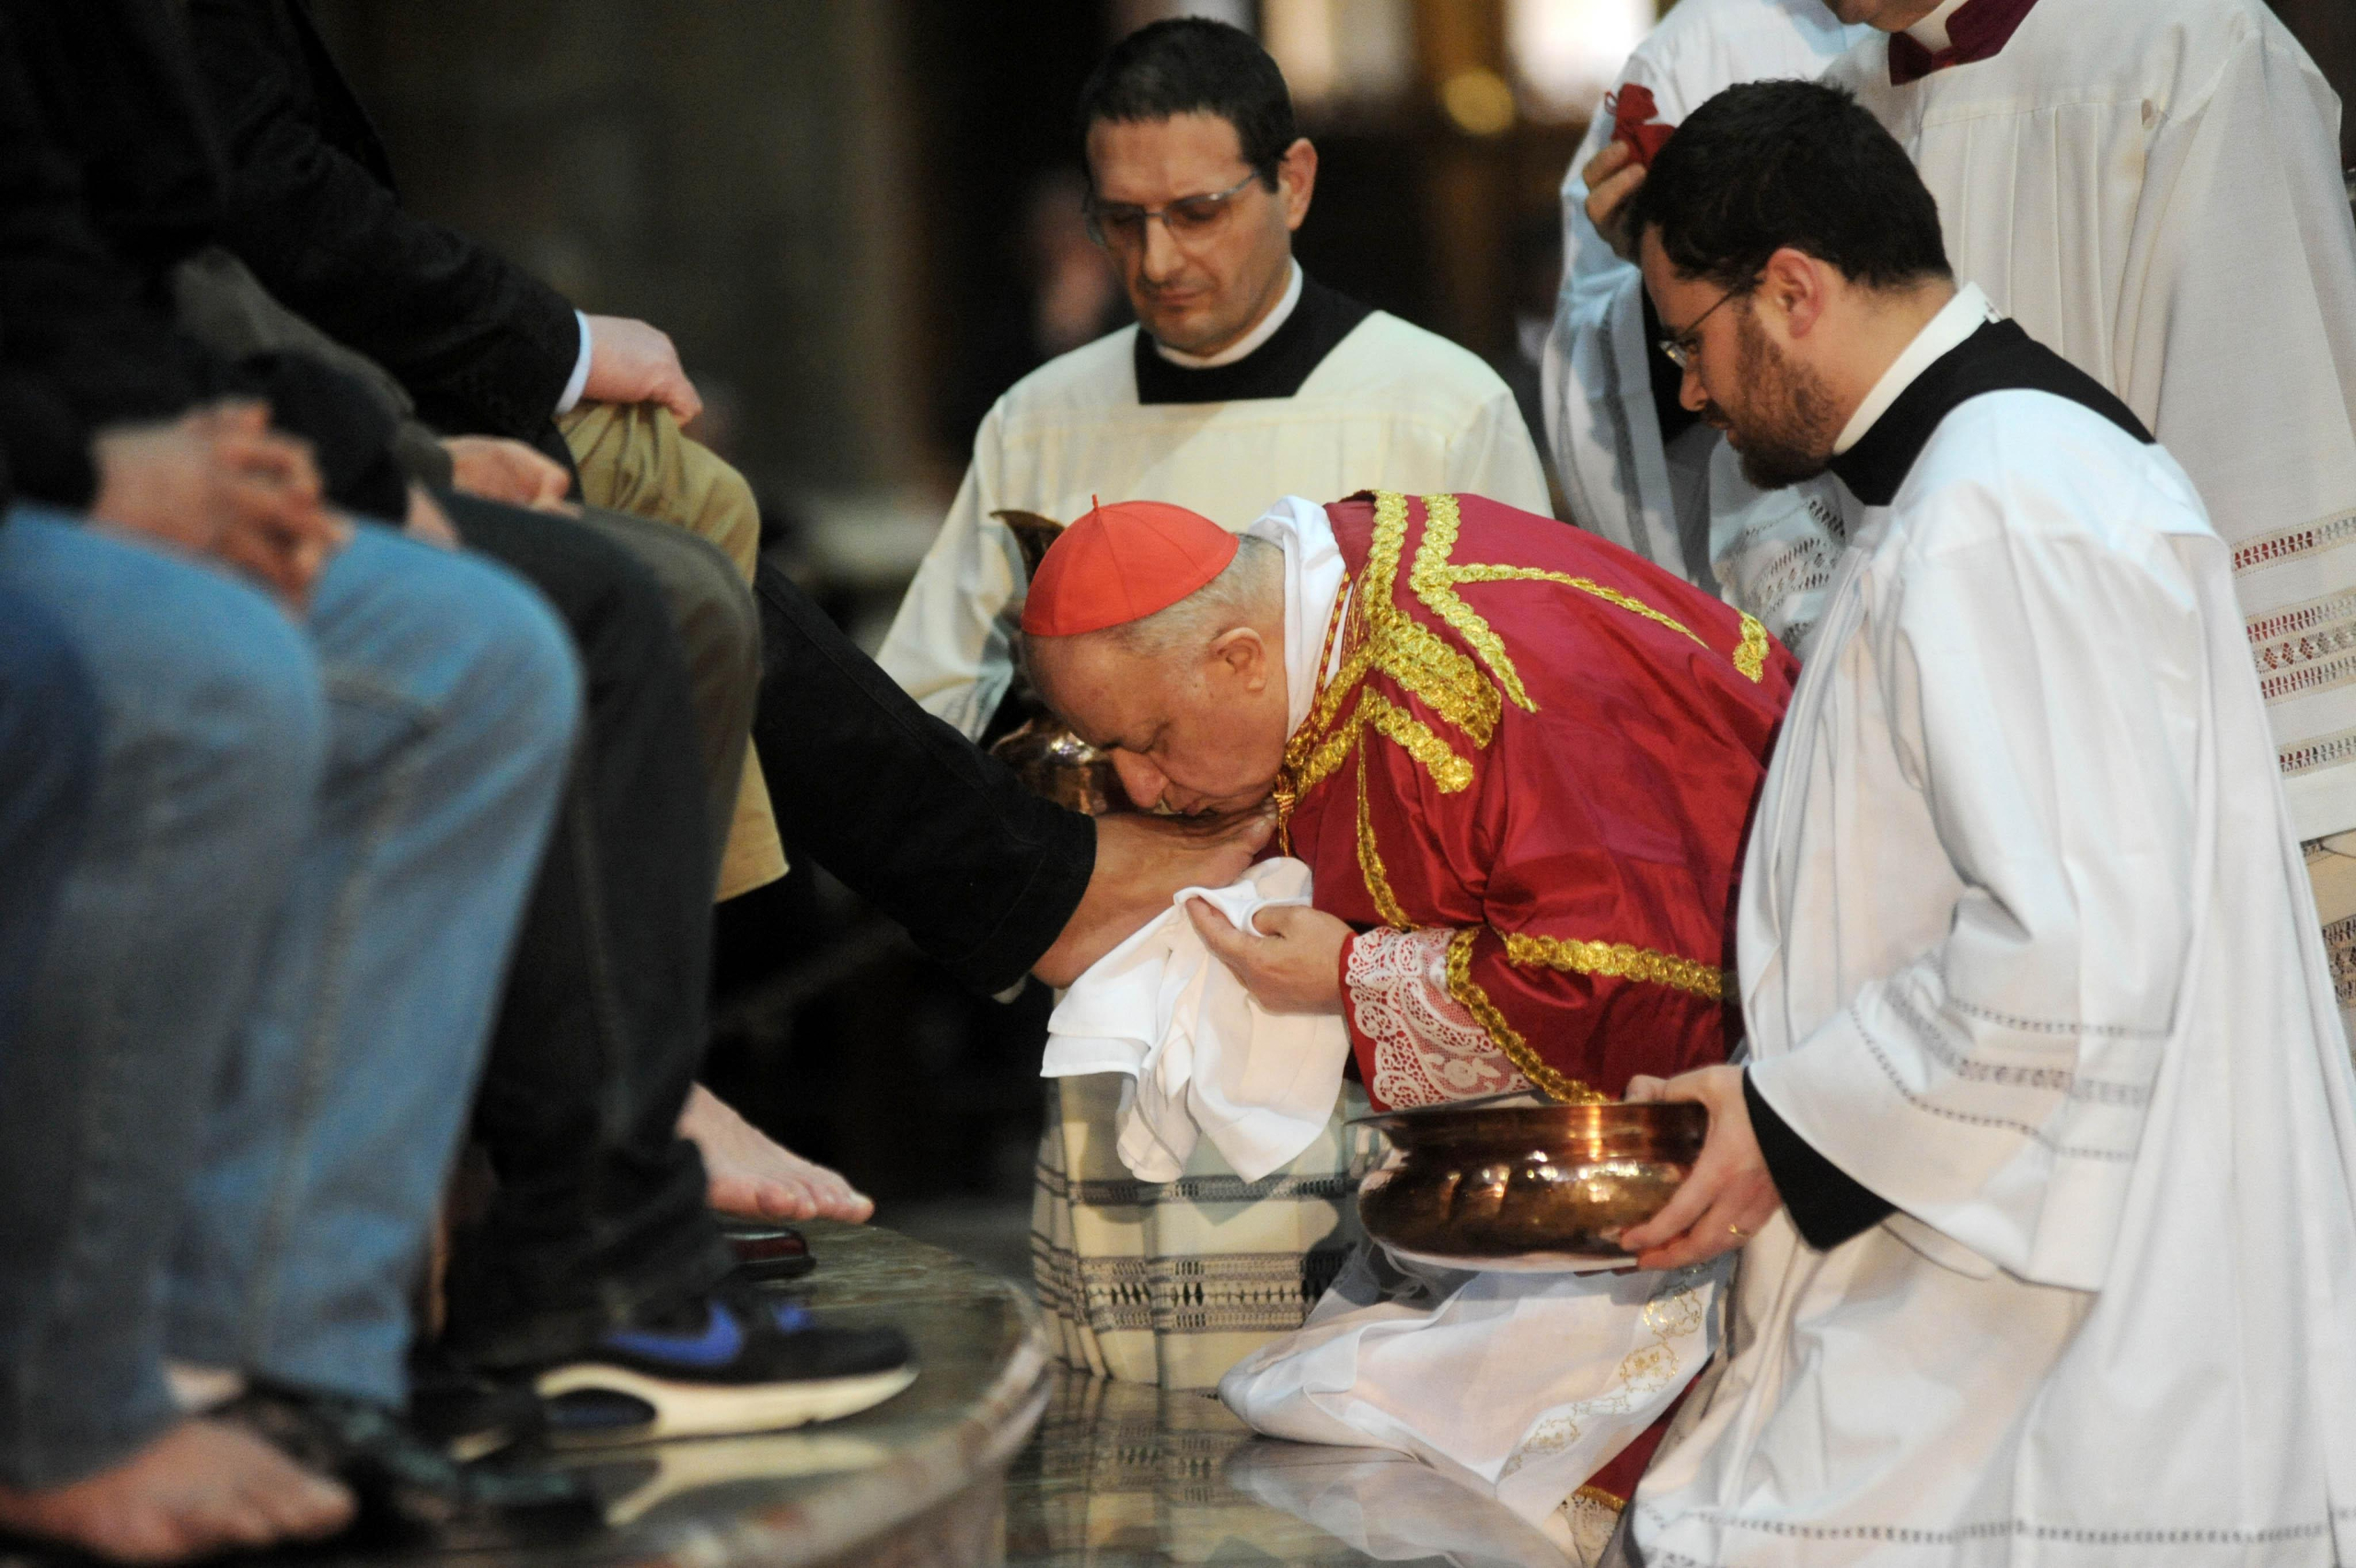 20100401 - MILANO - REL - PASQUA: DISOCCUPATI E CASSAINTEGRATI IN RITO LAVANDA DEI PIEDI DEL CARDINALE TETTAMANZI. L'Arcivescovo di Milano, cardinal Dionigi Tettamanzi, durante il rito della Lavanda dei piedi, riservato quest'anno a 13 persone colpite dagli effetti della crisi (4 disoccupati, 4 cassaintegrati e in mobilita' e 5 precari), durante la celebrazione nella cattedrale di Milano questo pomeriggio 01 aprile 2010.  ANSA/MILO SCIAKY/DRN